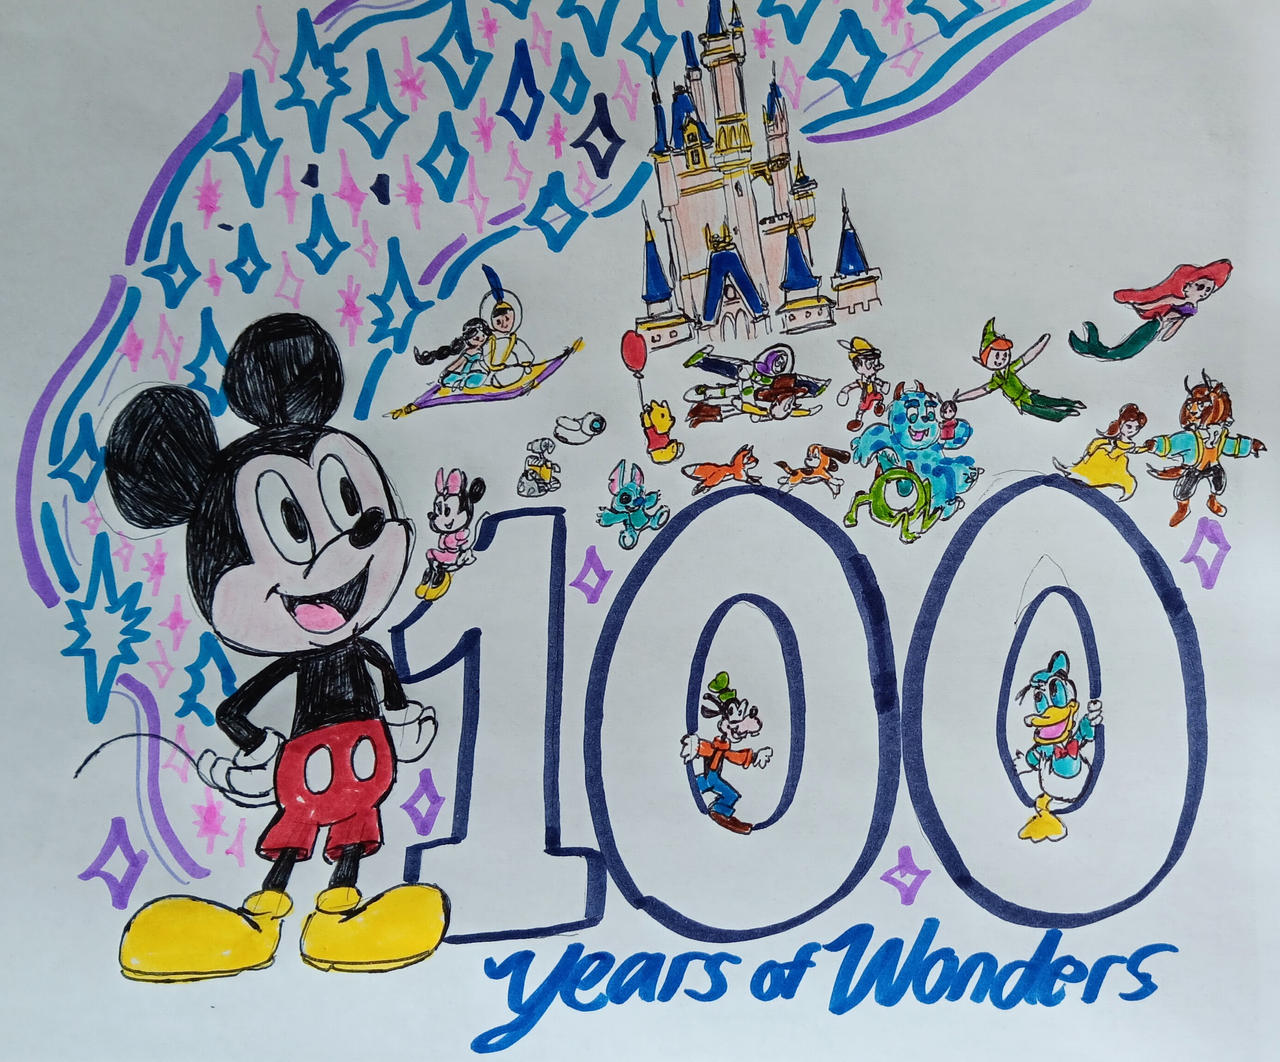 The next 100 years of wonder by facussparkle2002 on DeviantArt